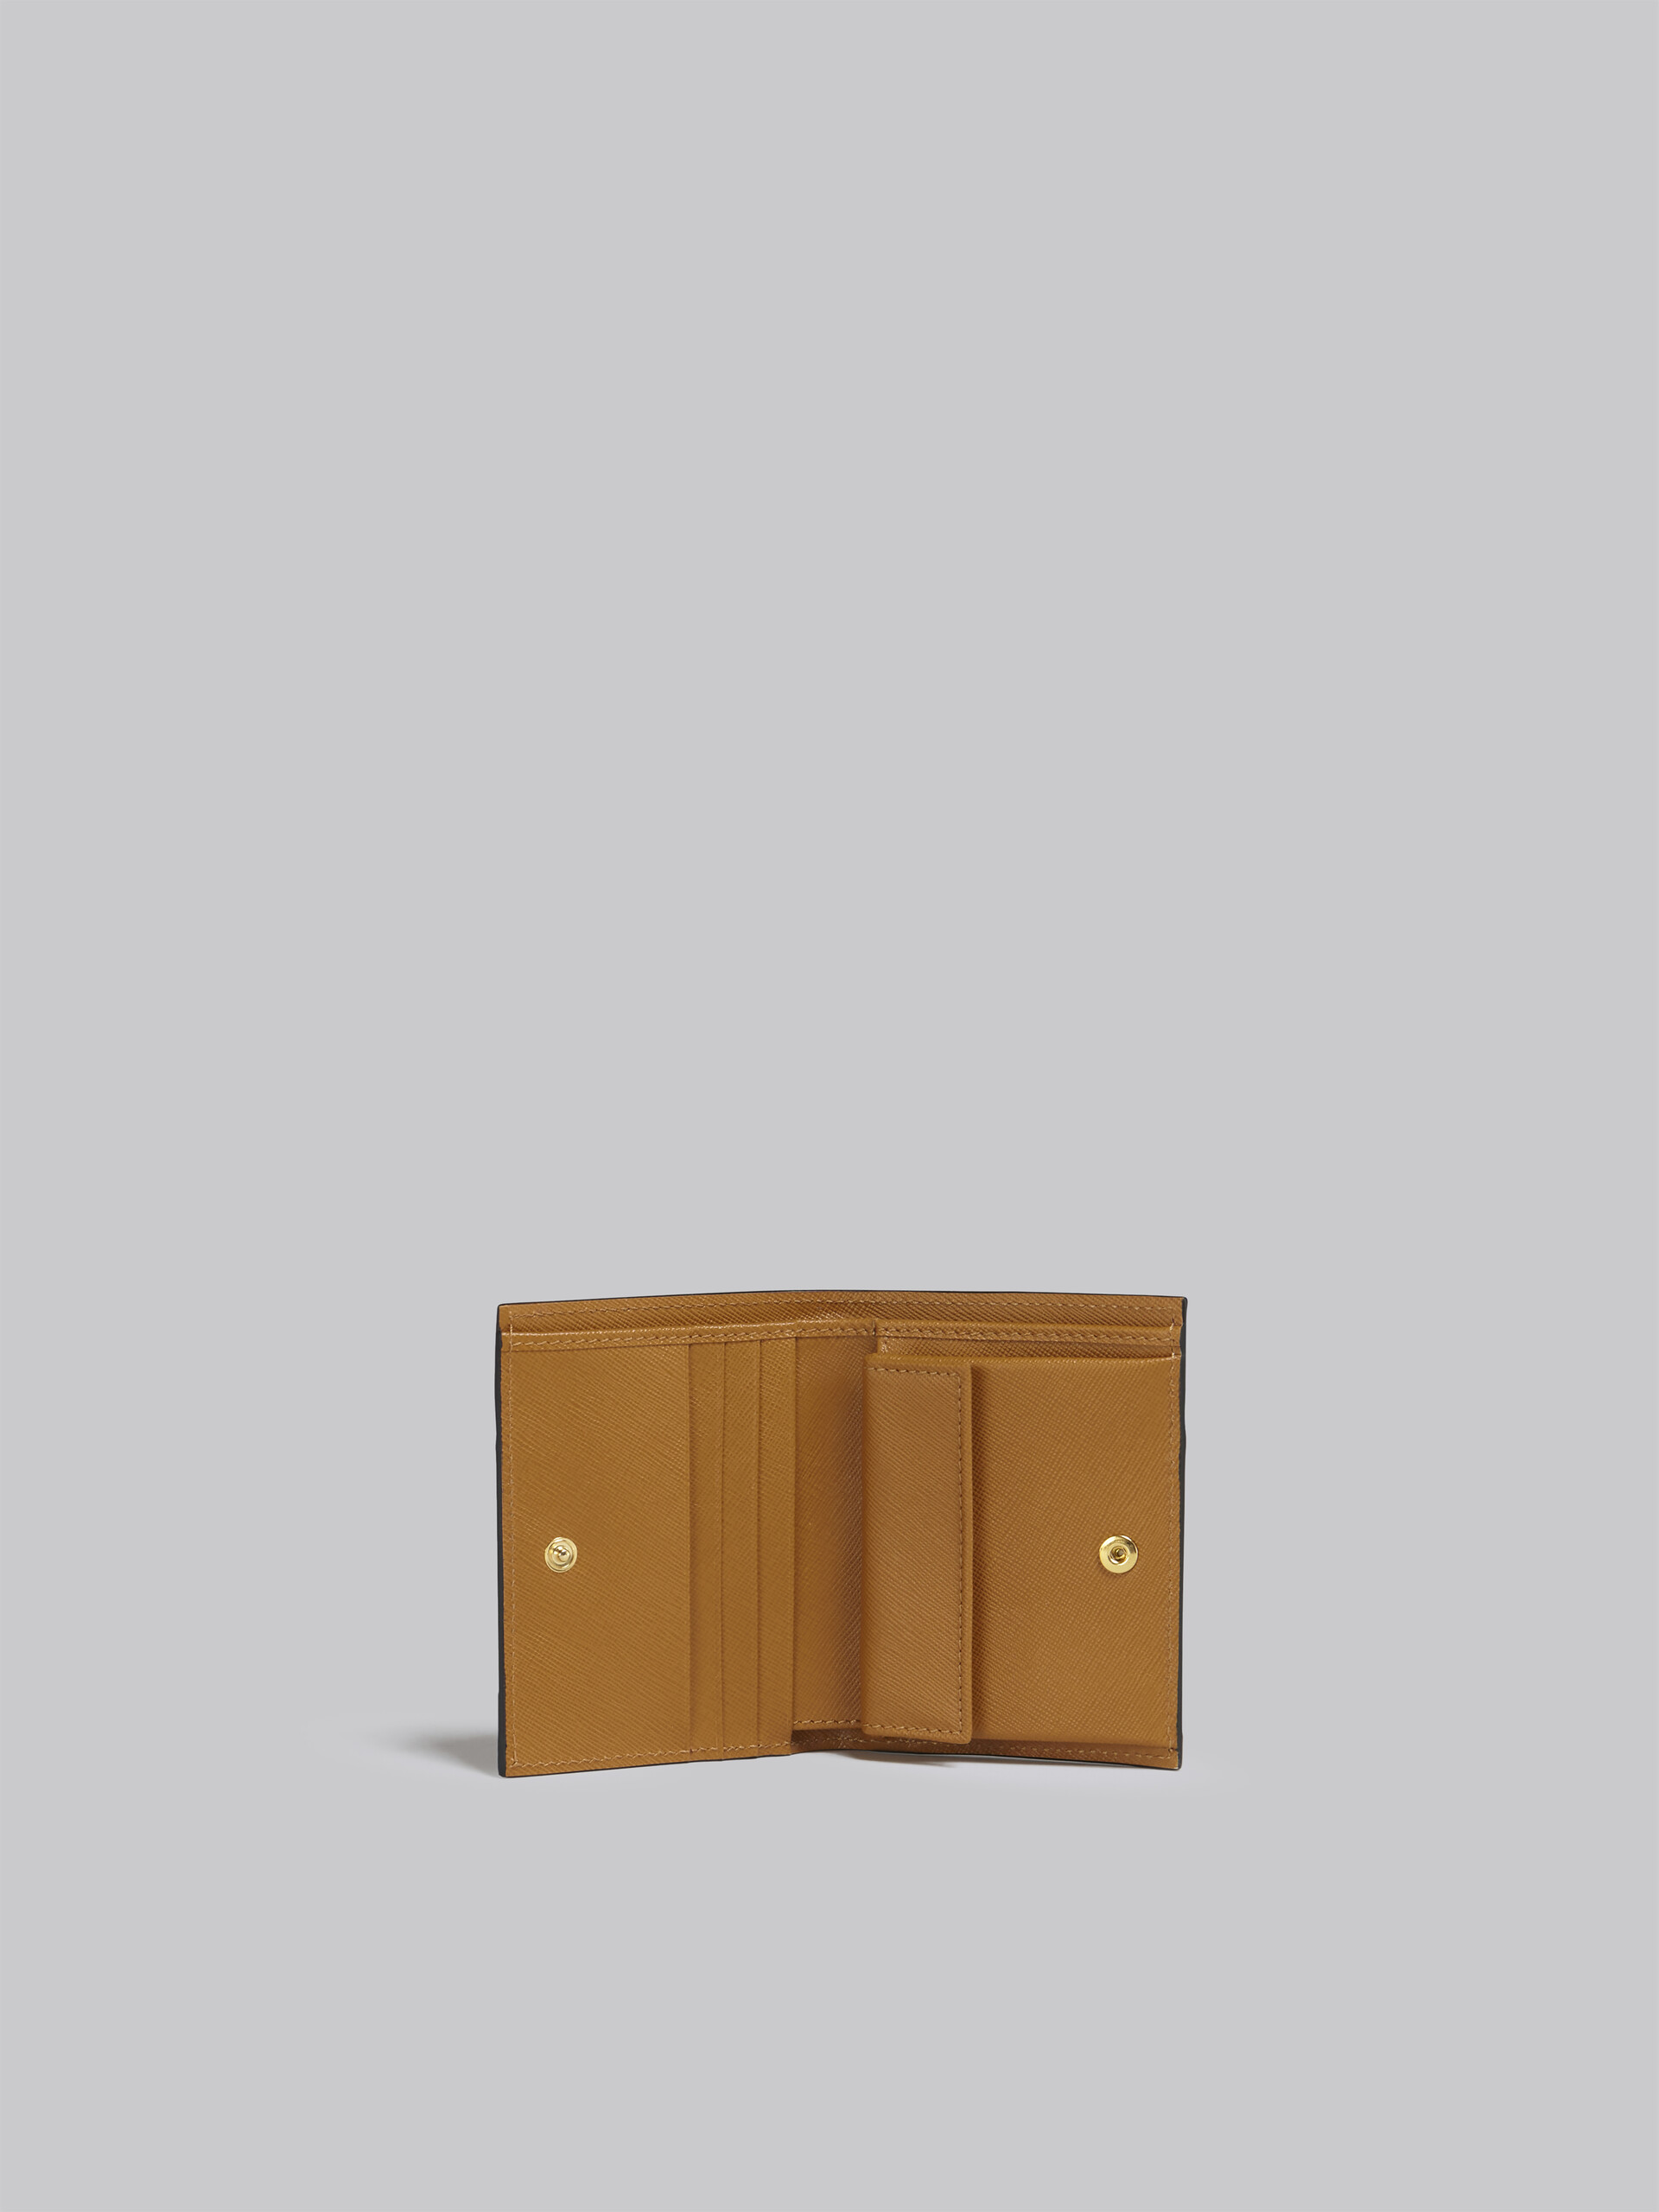 レッド ホワイト ブラウン サフィアーノレザー製 二つ折りウォレット - 財布 - Image 2